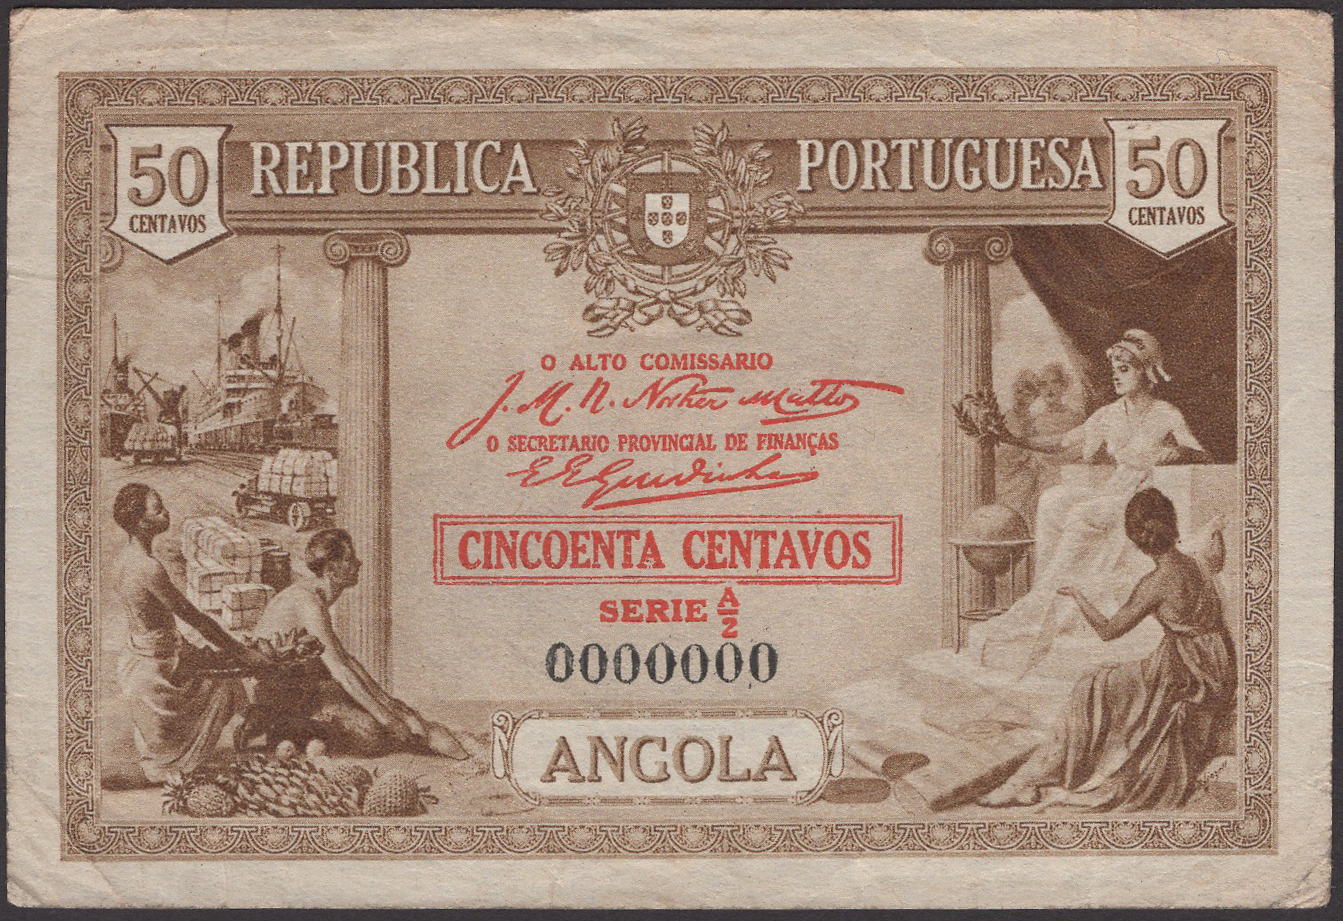 Republica Portuguesa, Angola, specimen 50 Centavos, 1923, serial number A/2 0000000, and...